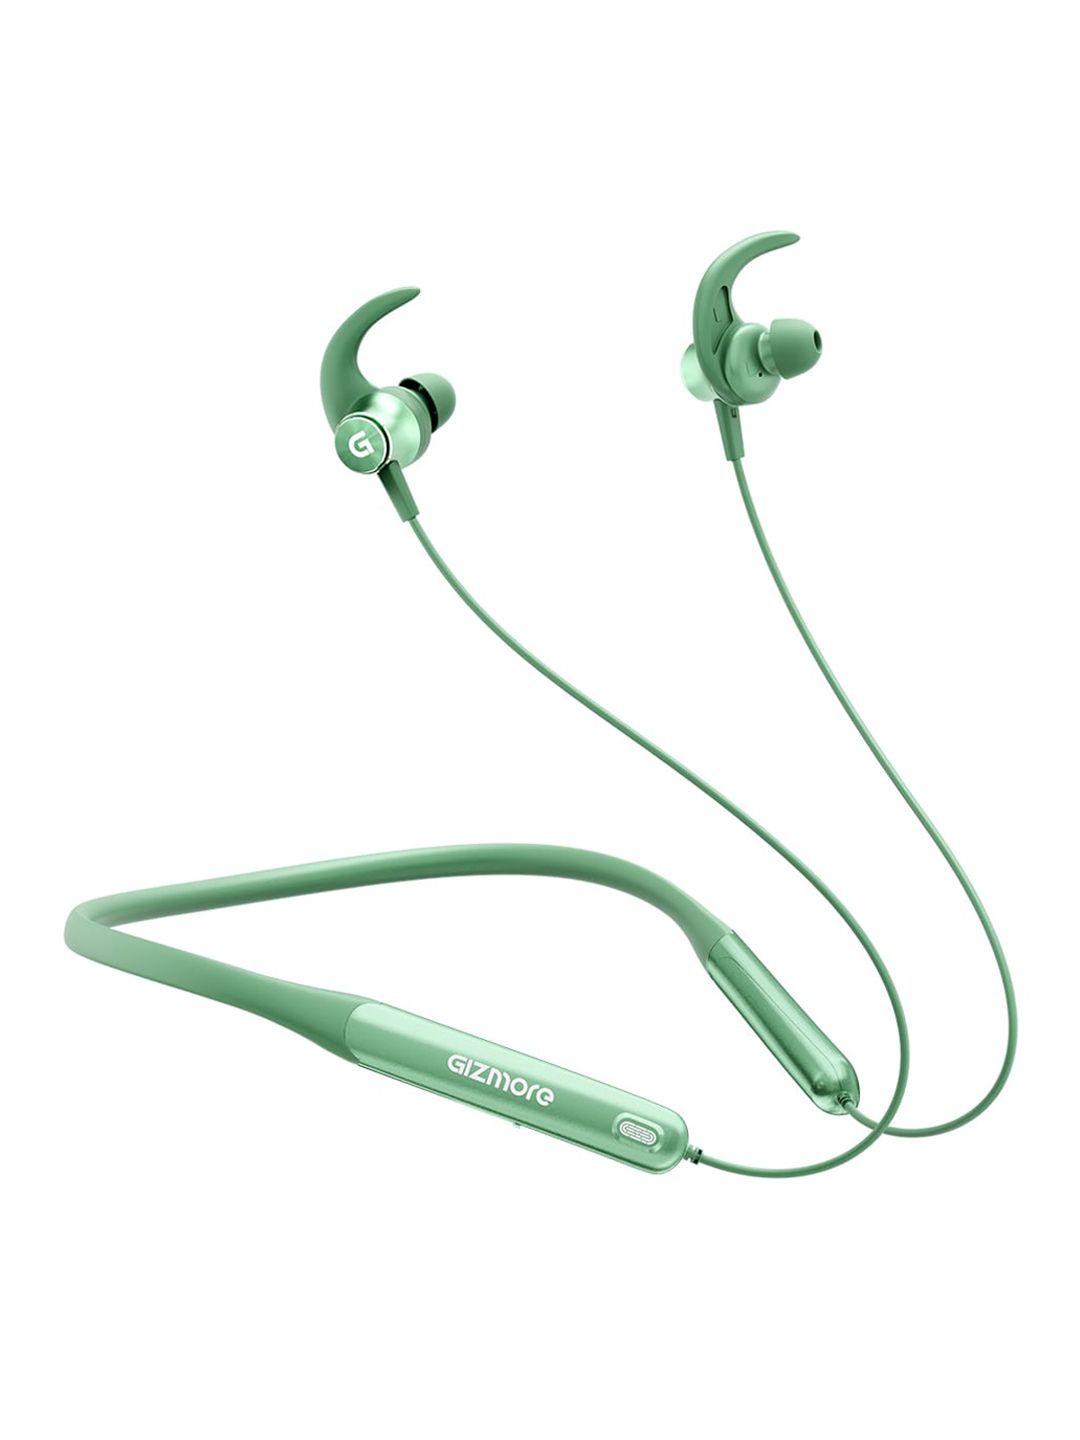 gizmore wireless bluetooth in-ear neckband earphones